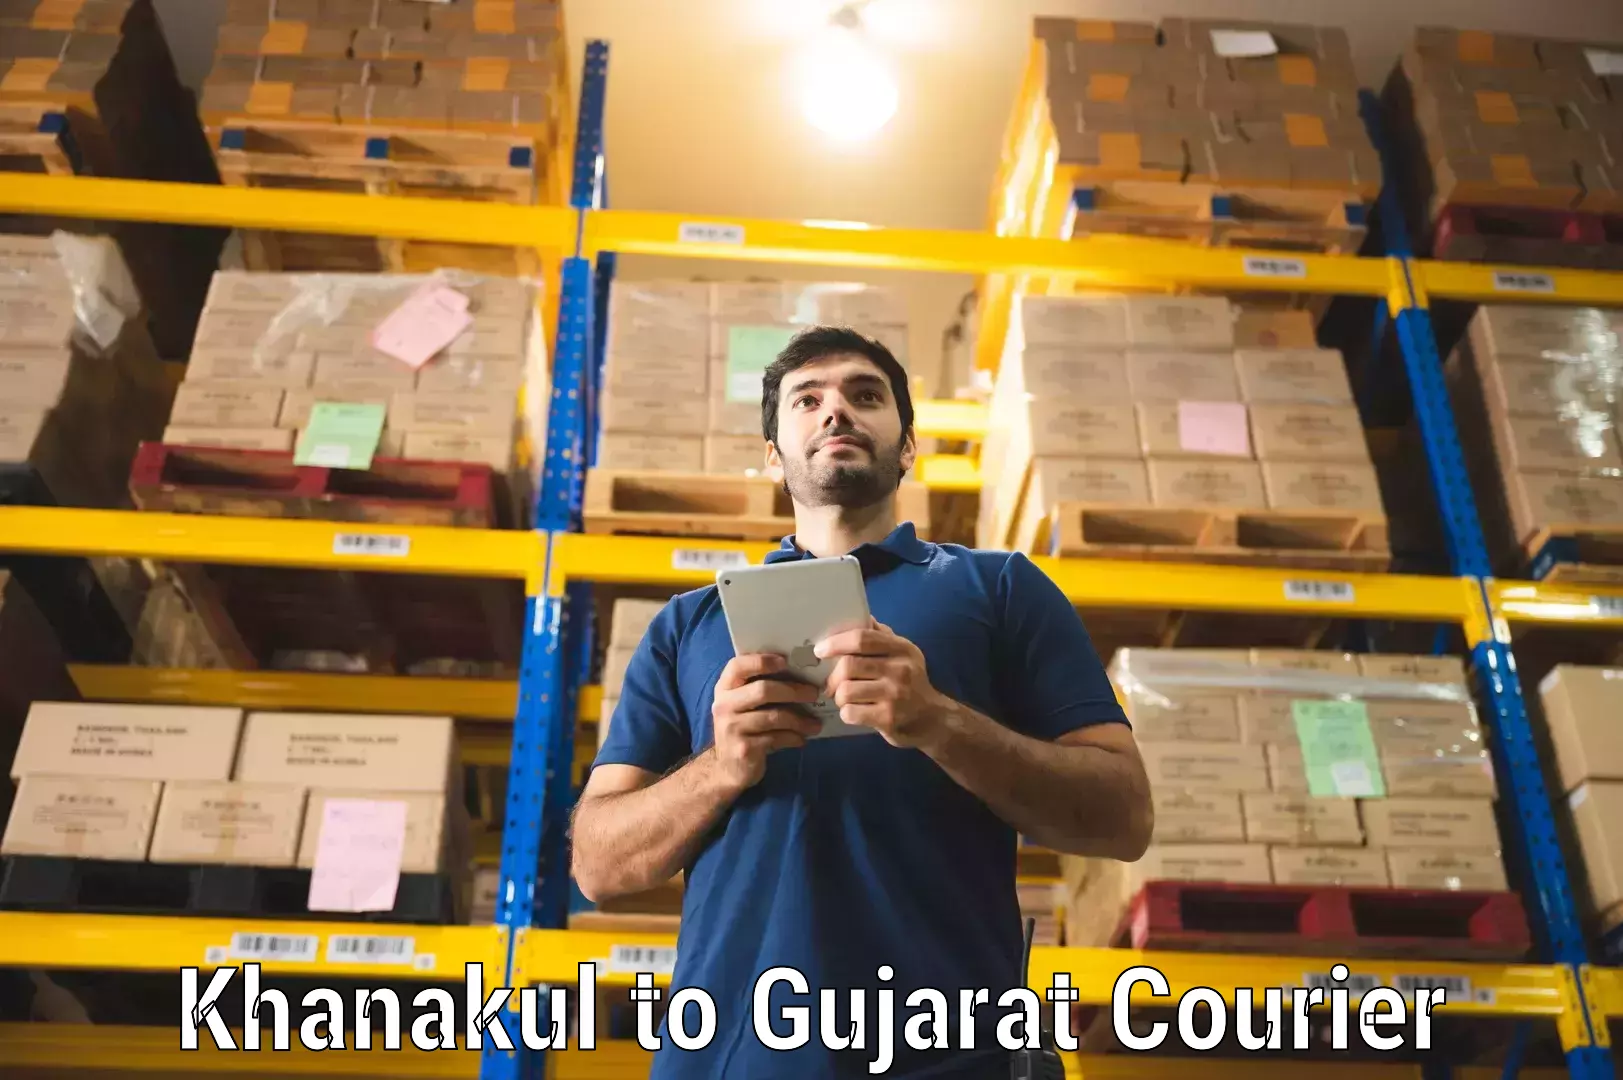 Courier service efficiency Khanakul to Gujarat